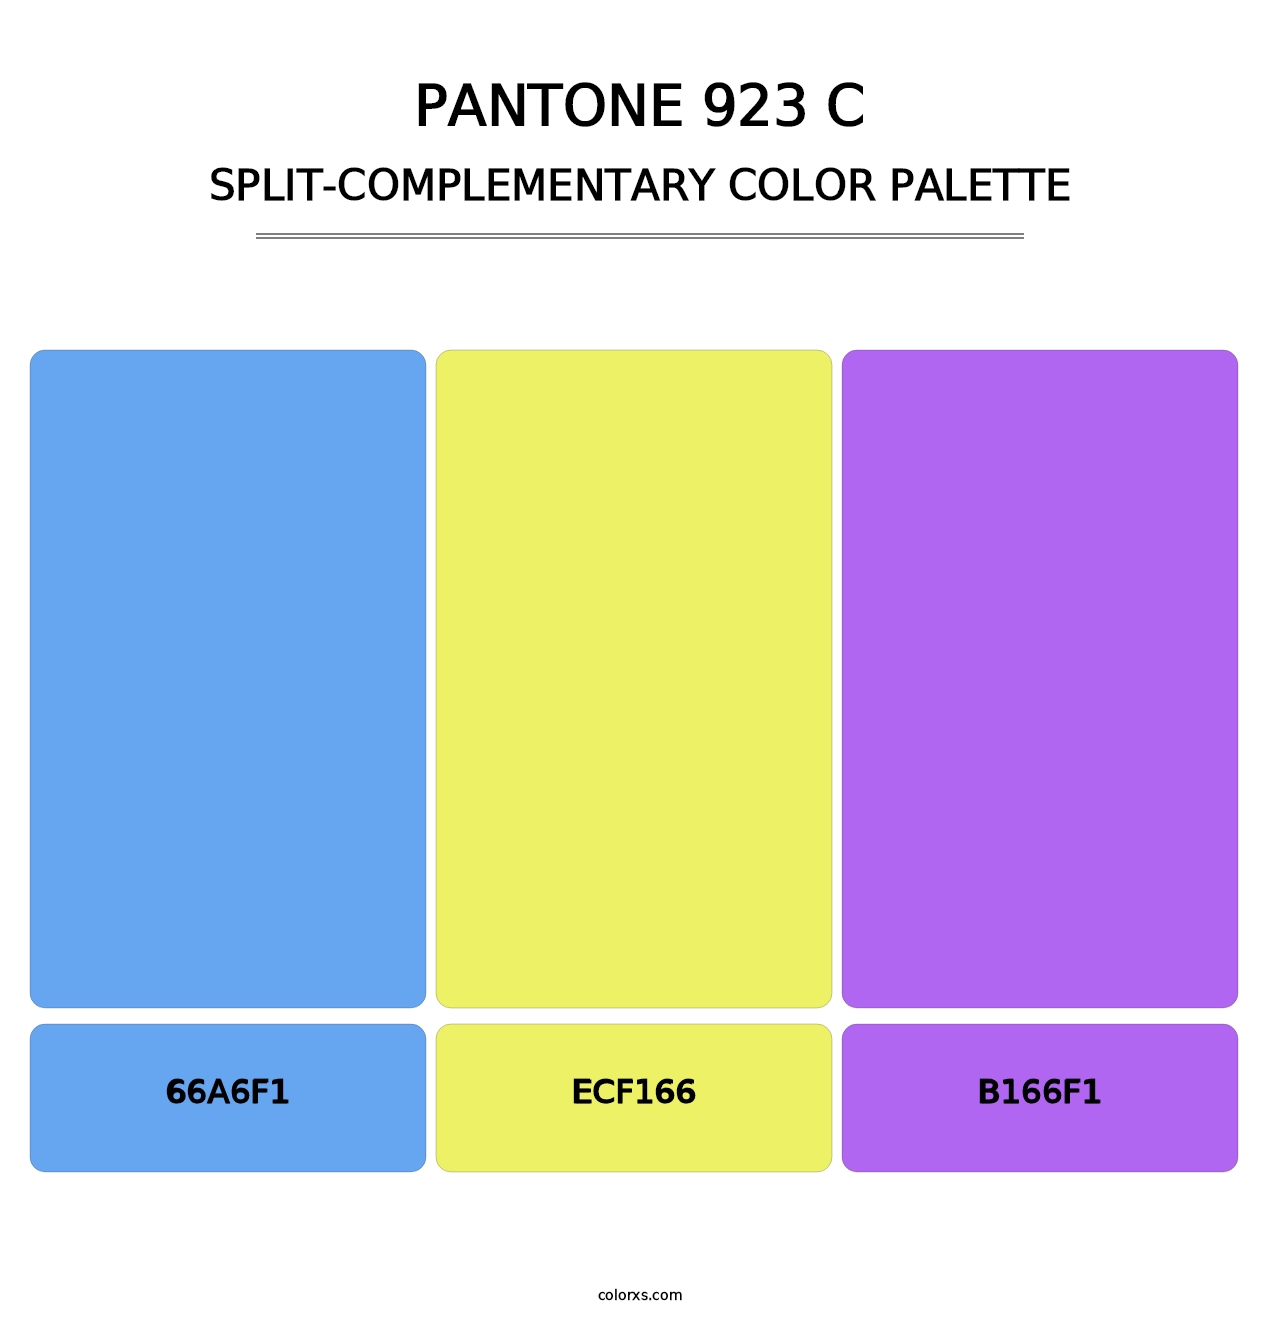 PANTONE 923 C - Split-Complementary Color Palette